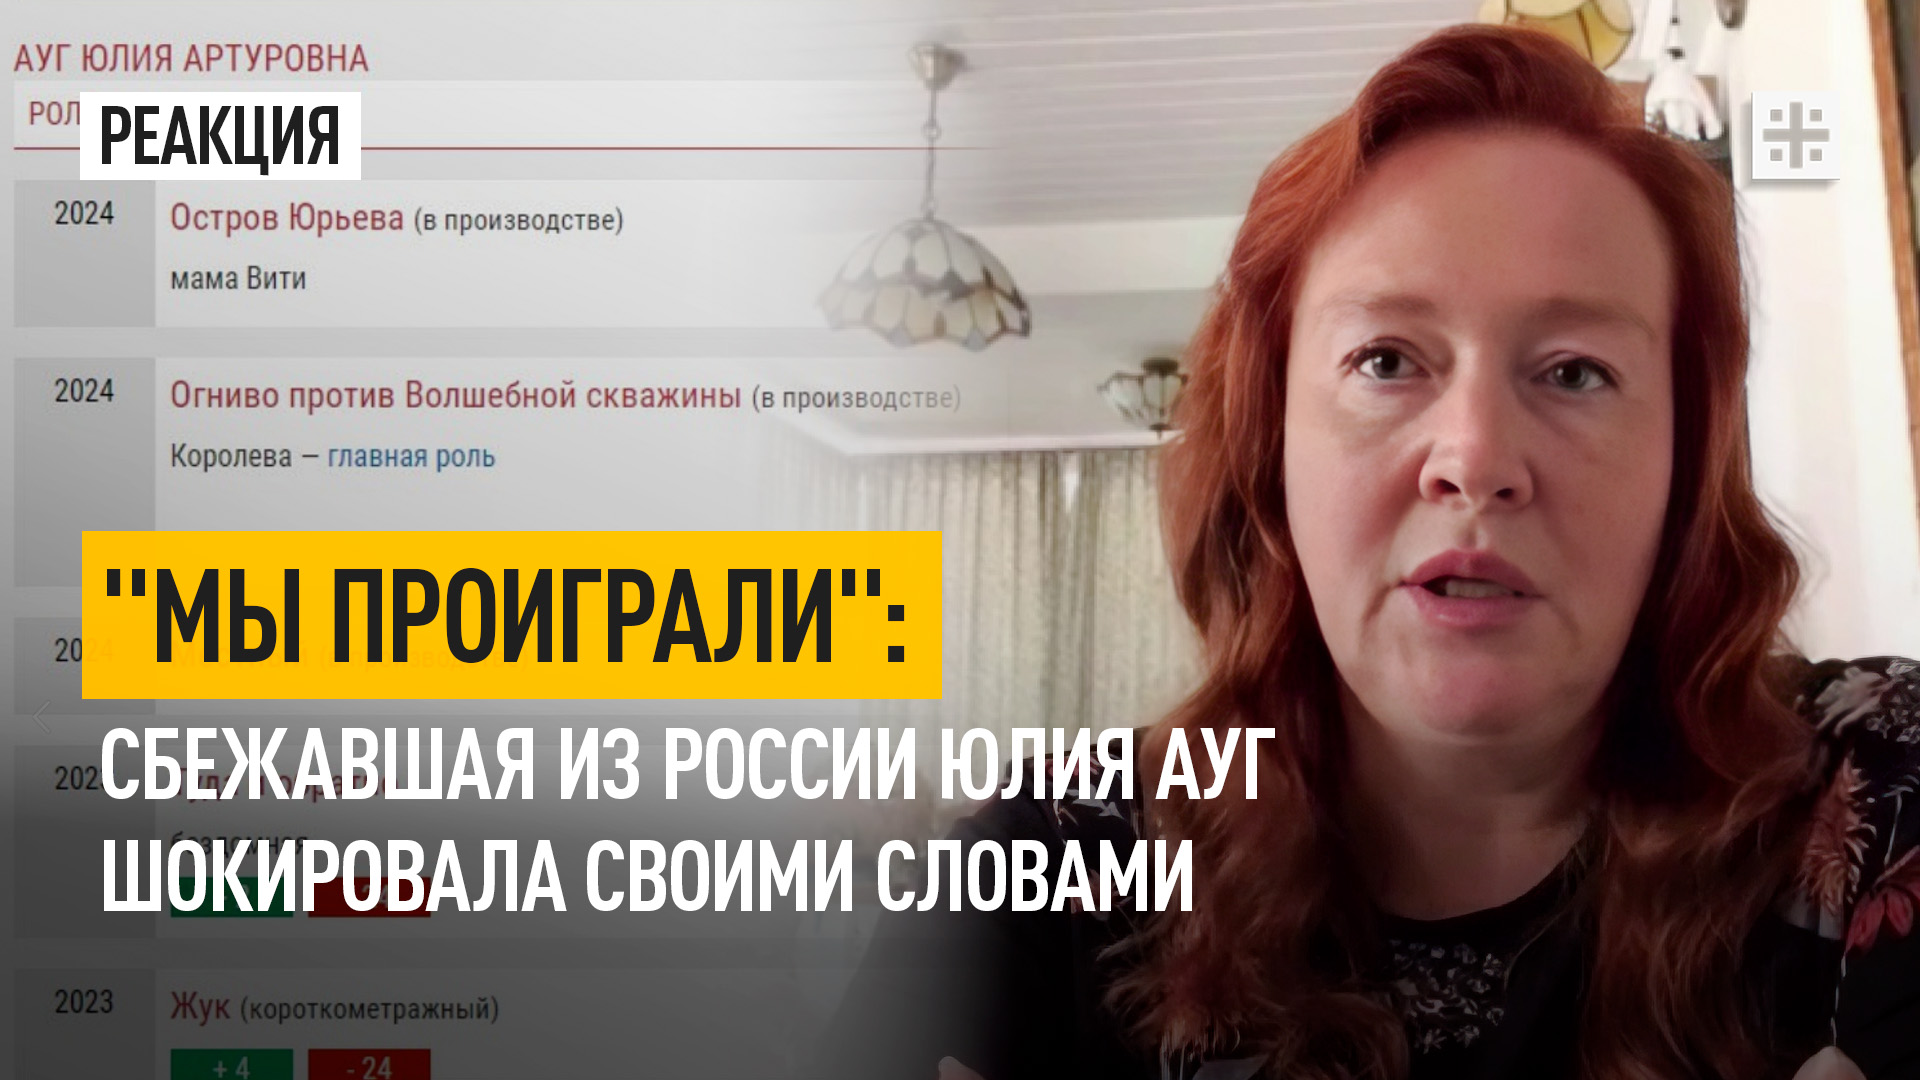 "Мы проиграли": Сбежавшая из России Юлия Ауг шокировала своими словами